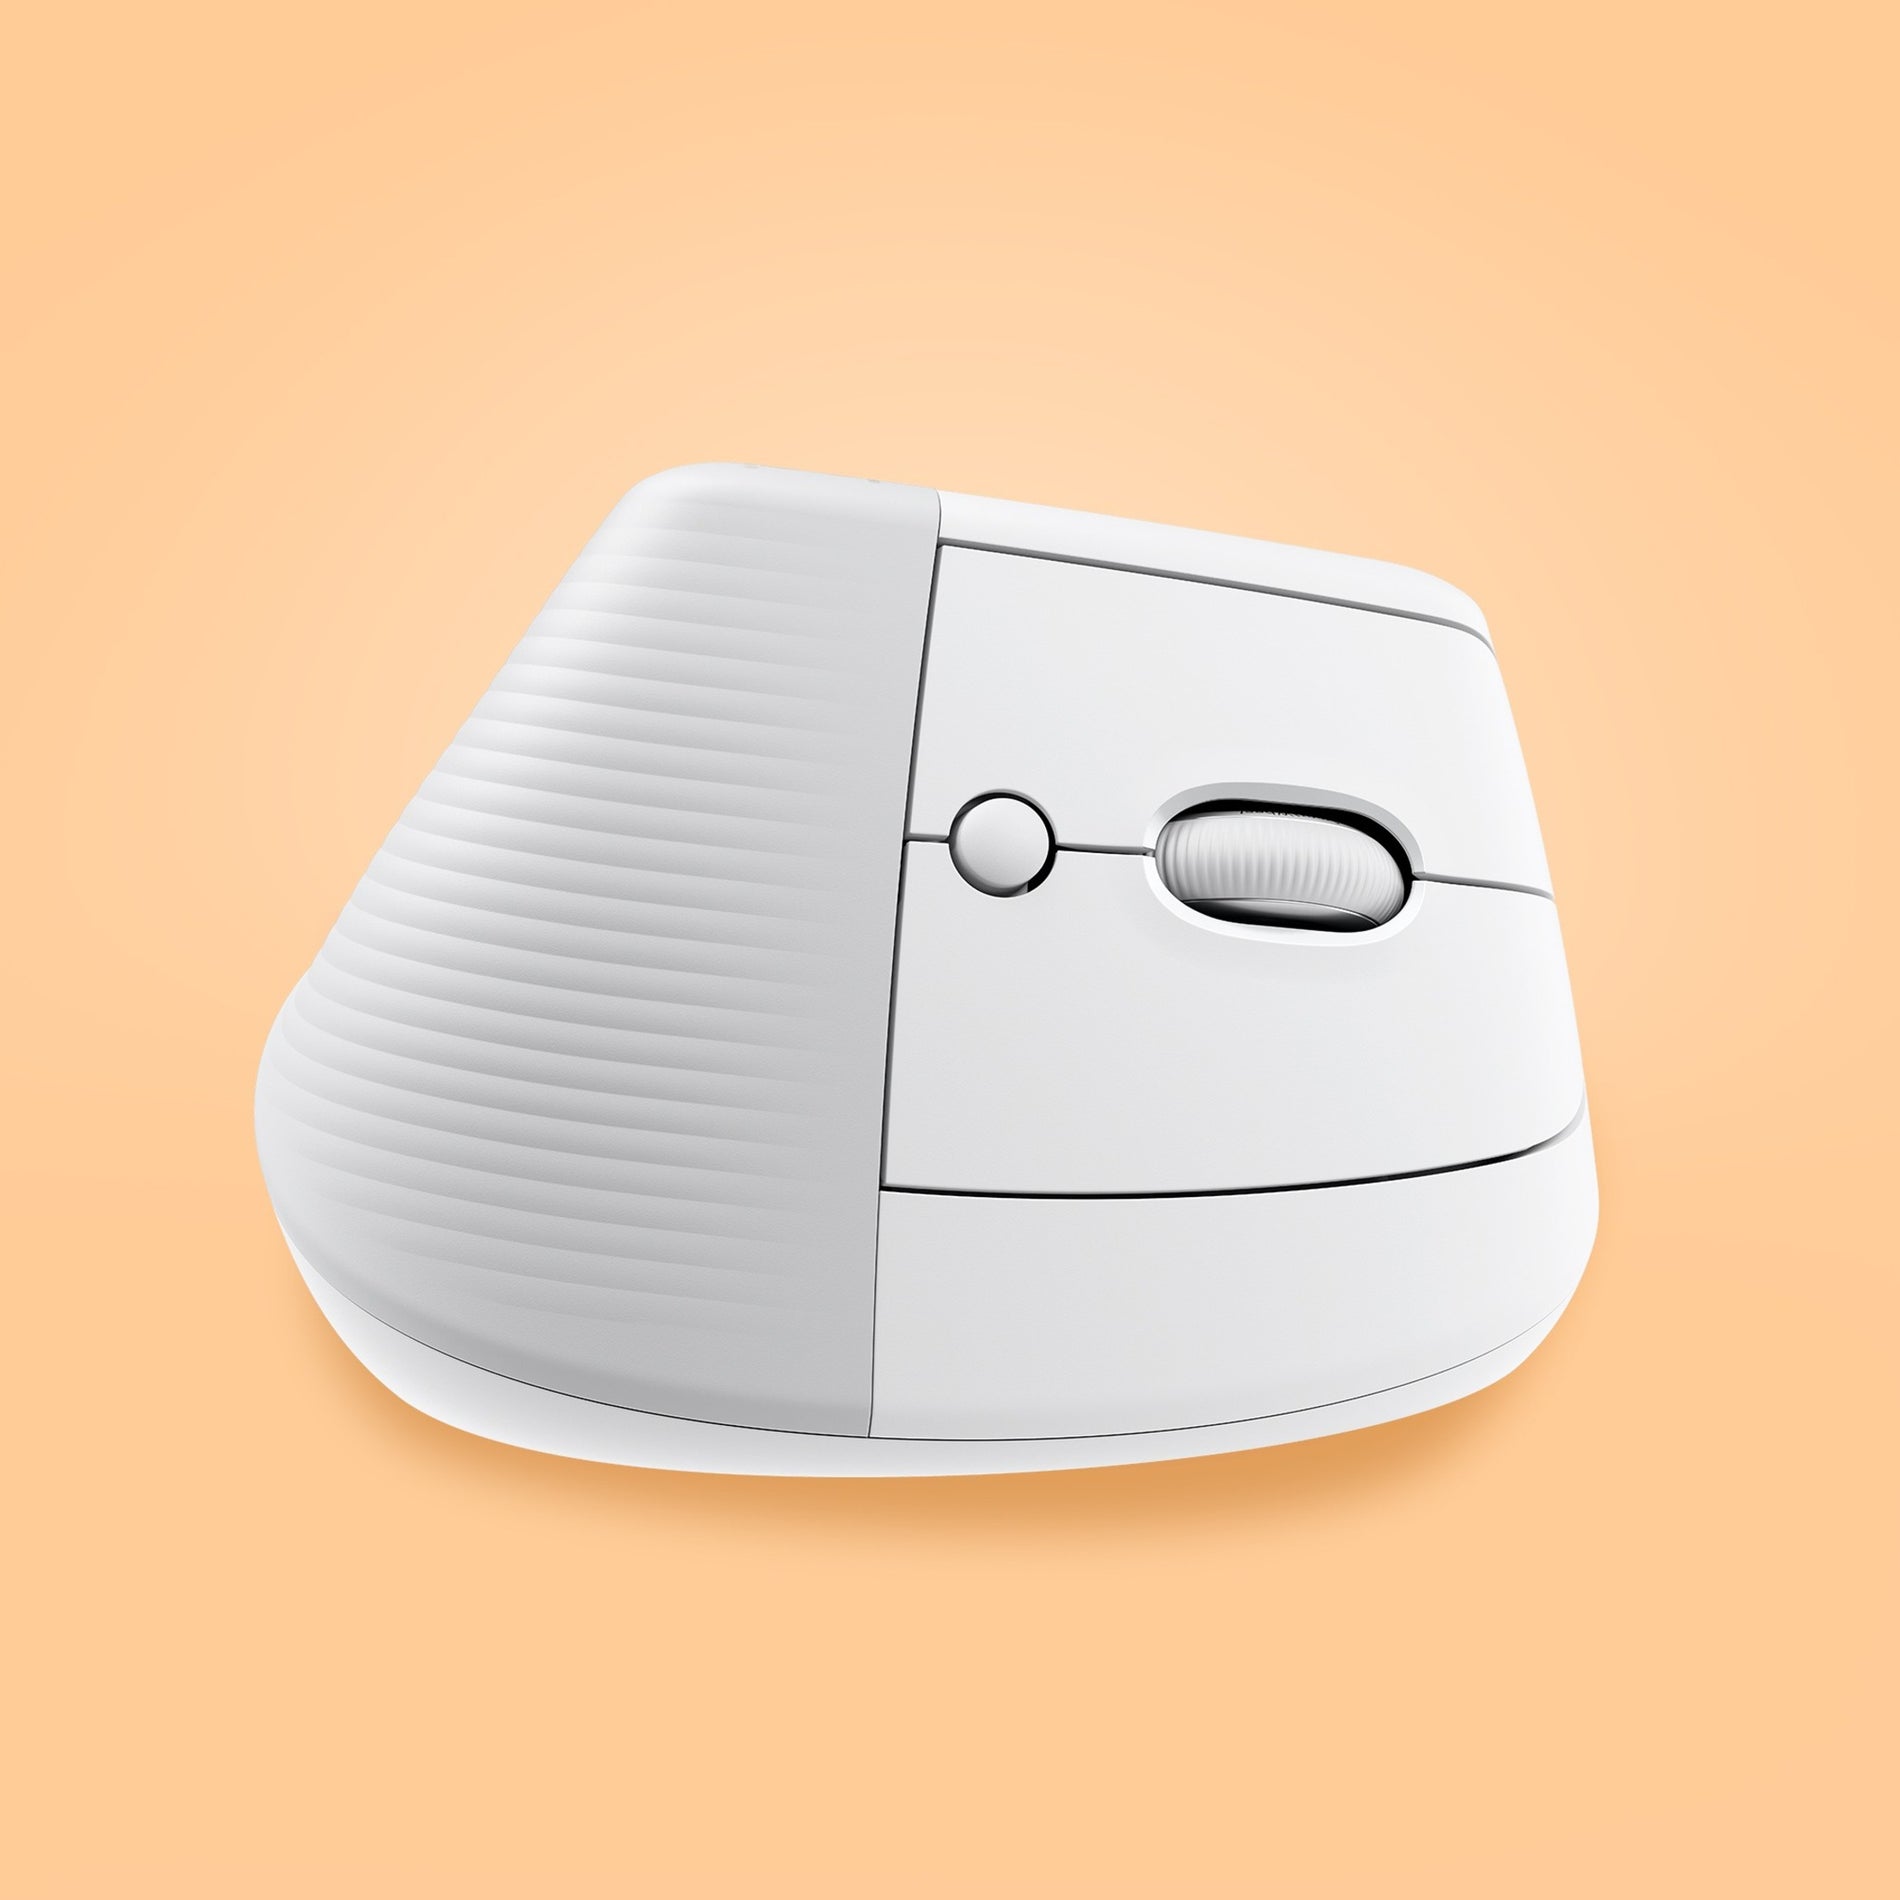 Logitech 910-006469 Lift Vertical Ergonomic Mouse (Off-white), Left-handed, Small/Medium, 4000 dpi, Wireless